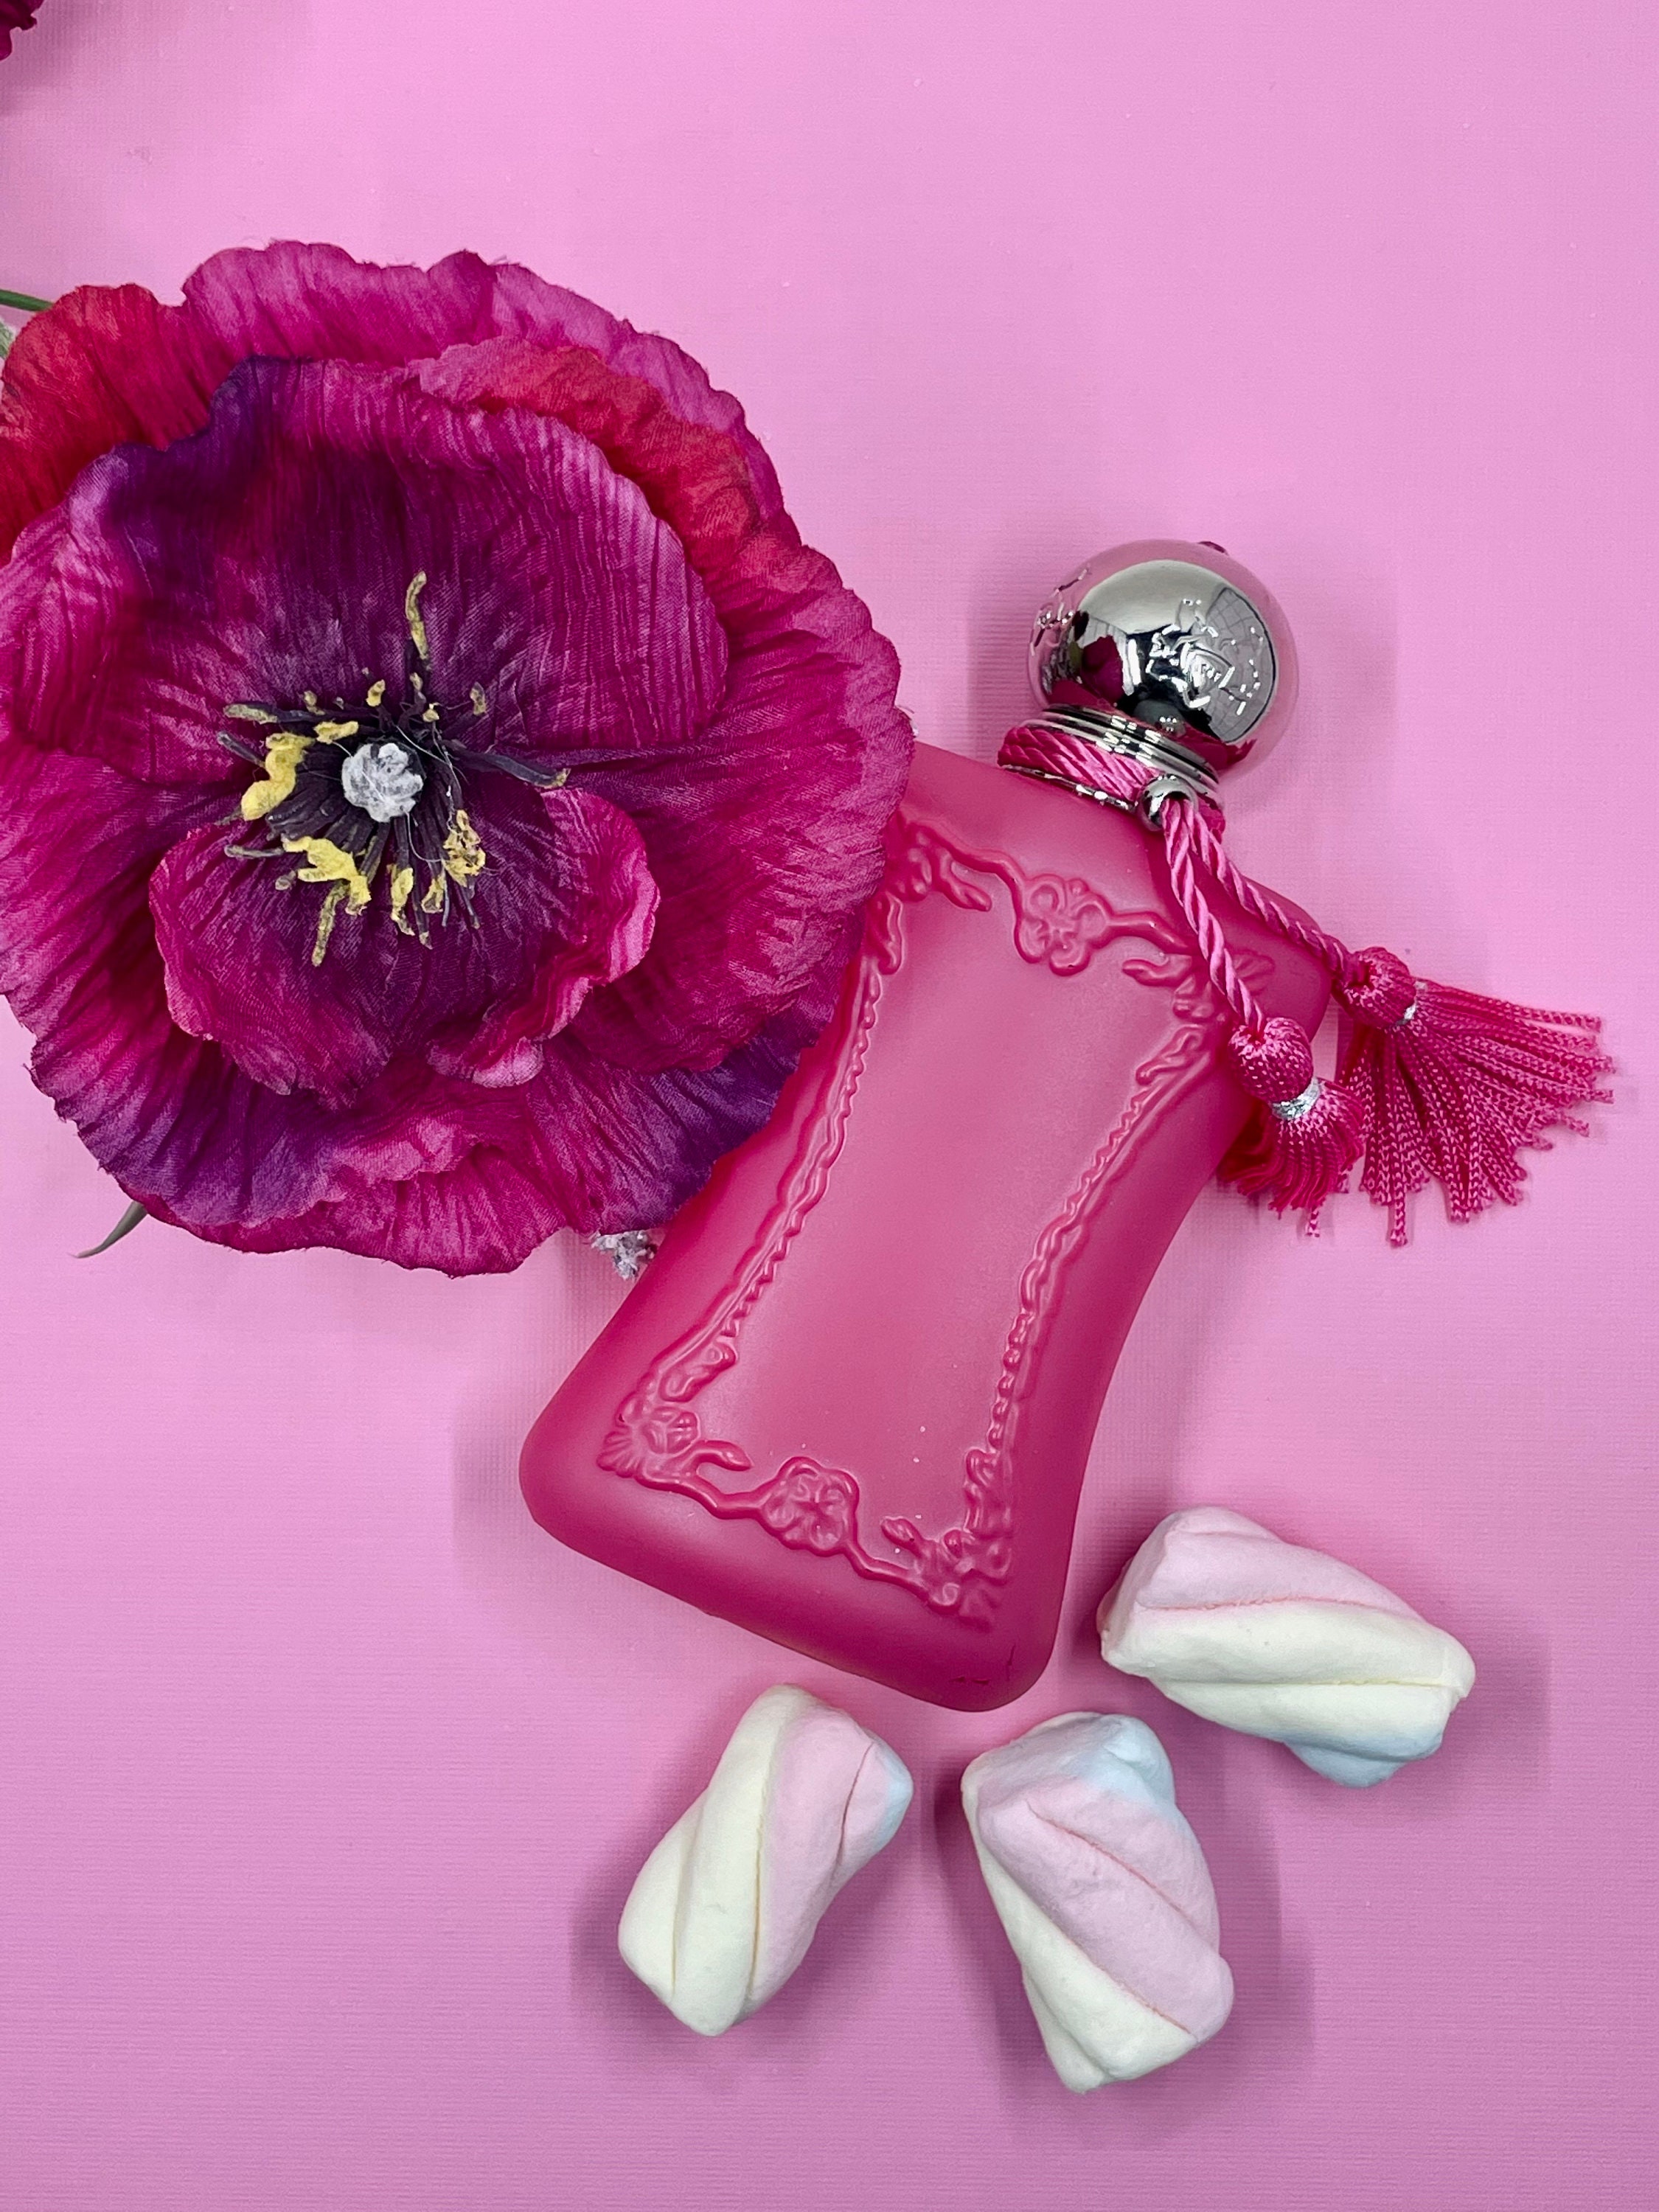 Parfums de Marly Oriana Eau de Parfum - 2.5 oz.